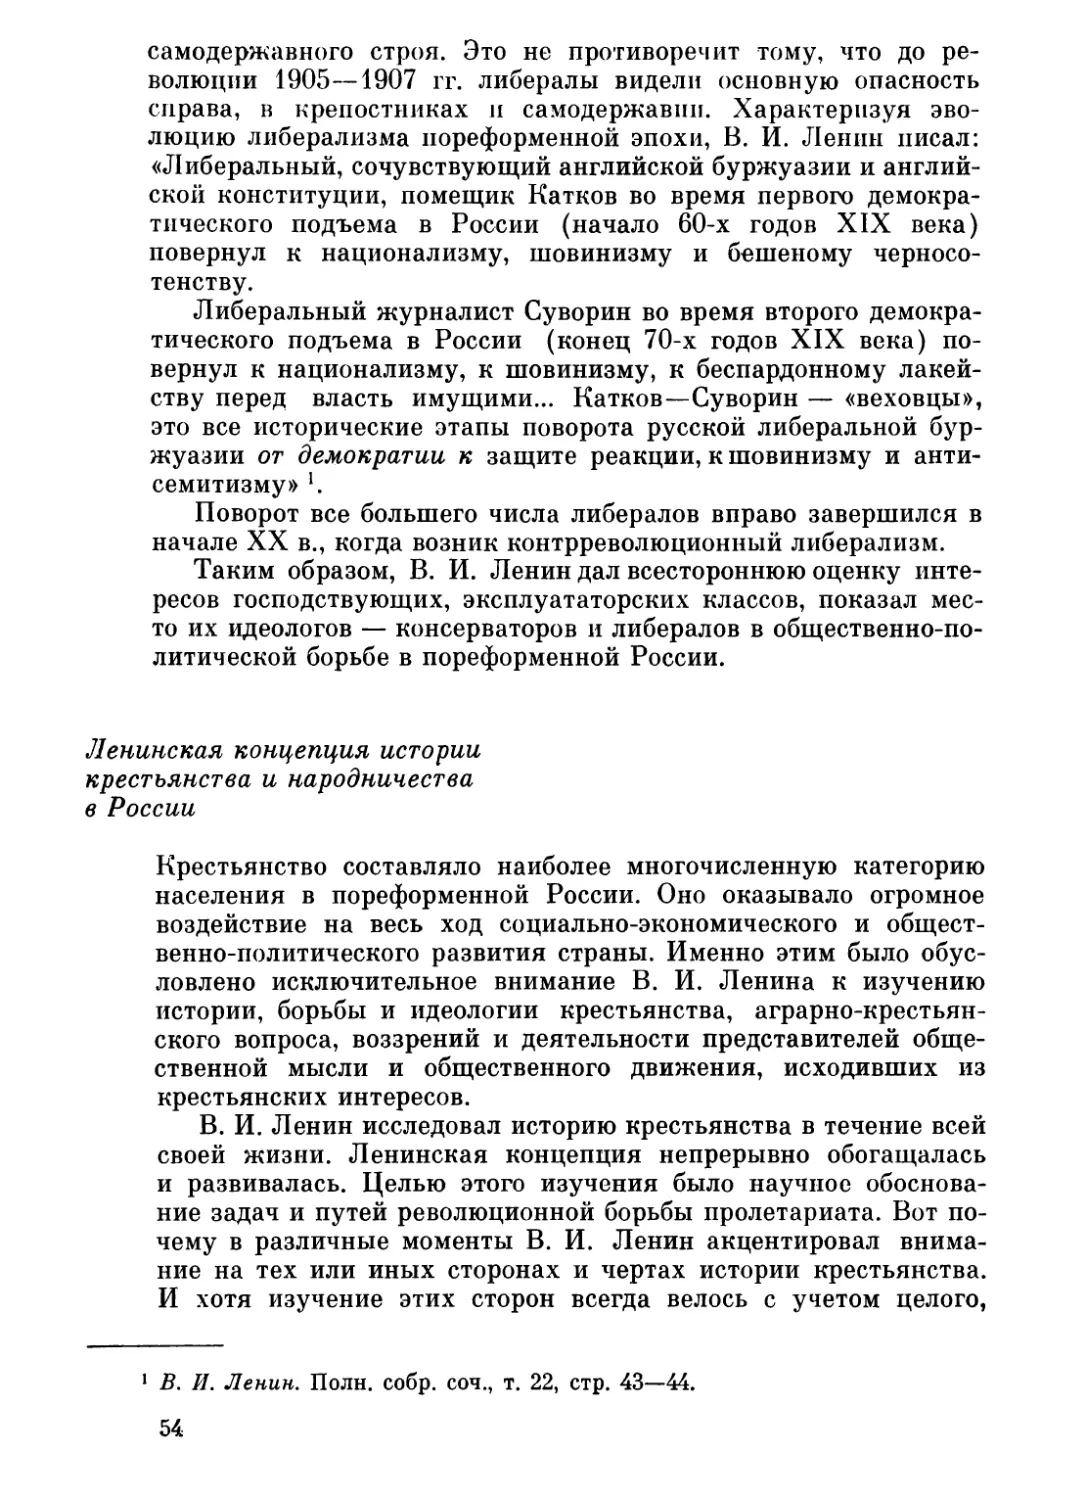 Ленинская концепция истории крестьянства и народничества в России